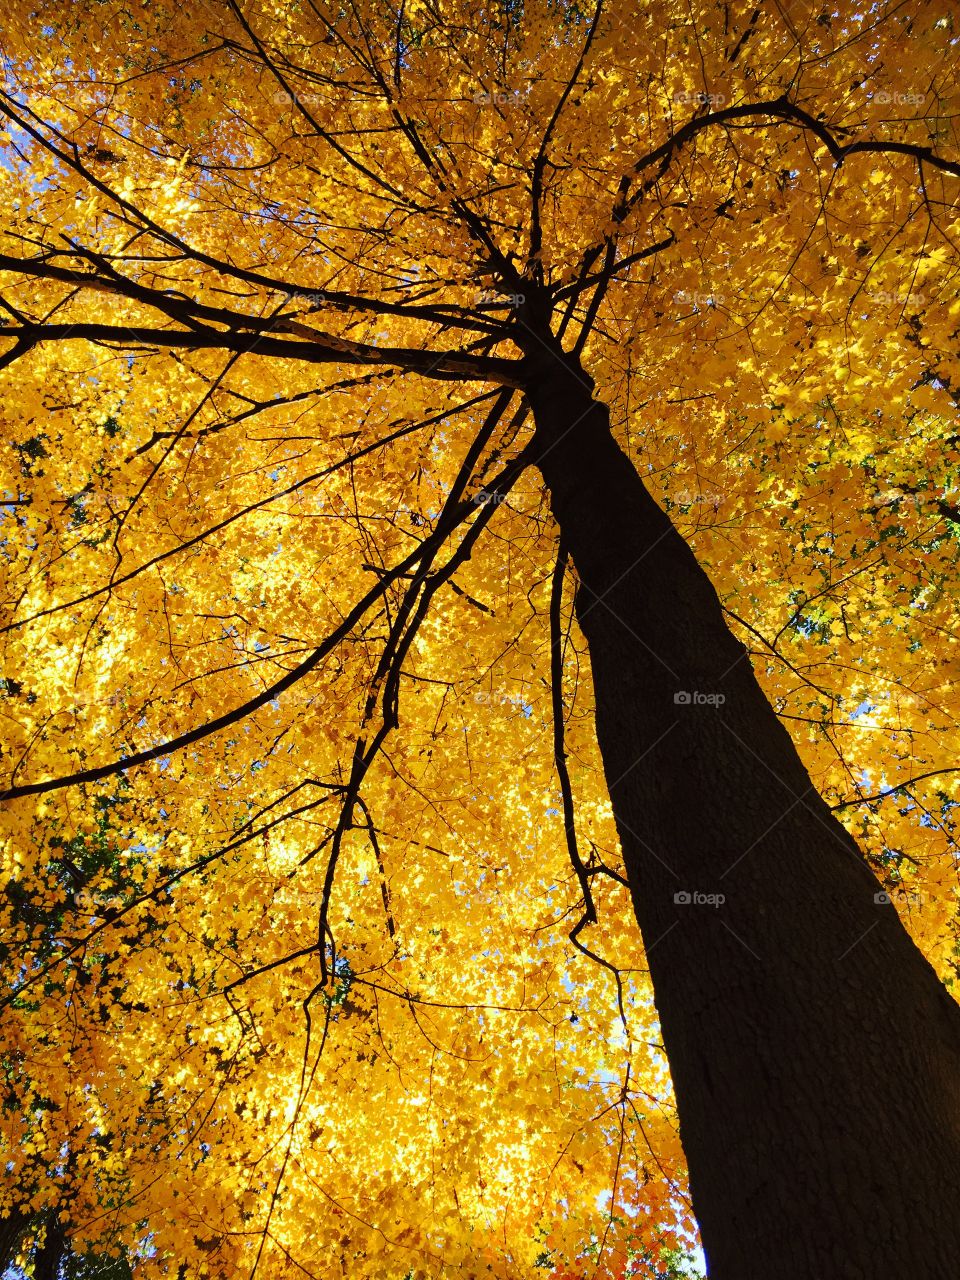 Tree in autumn 